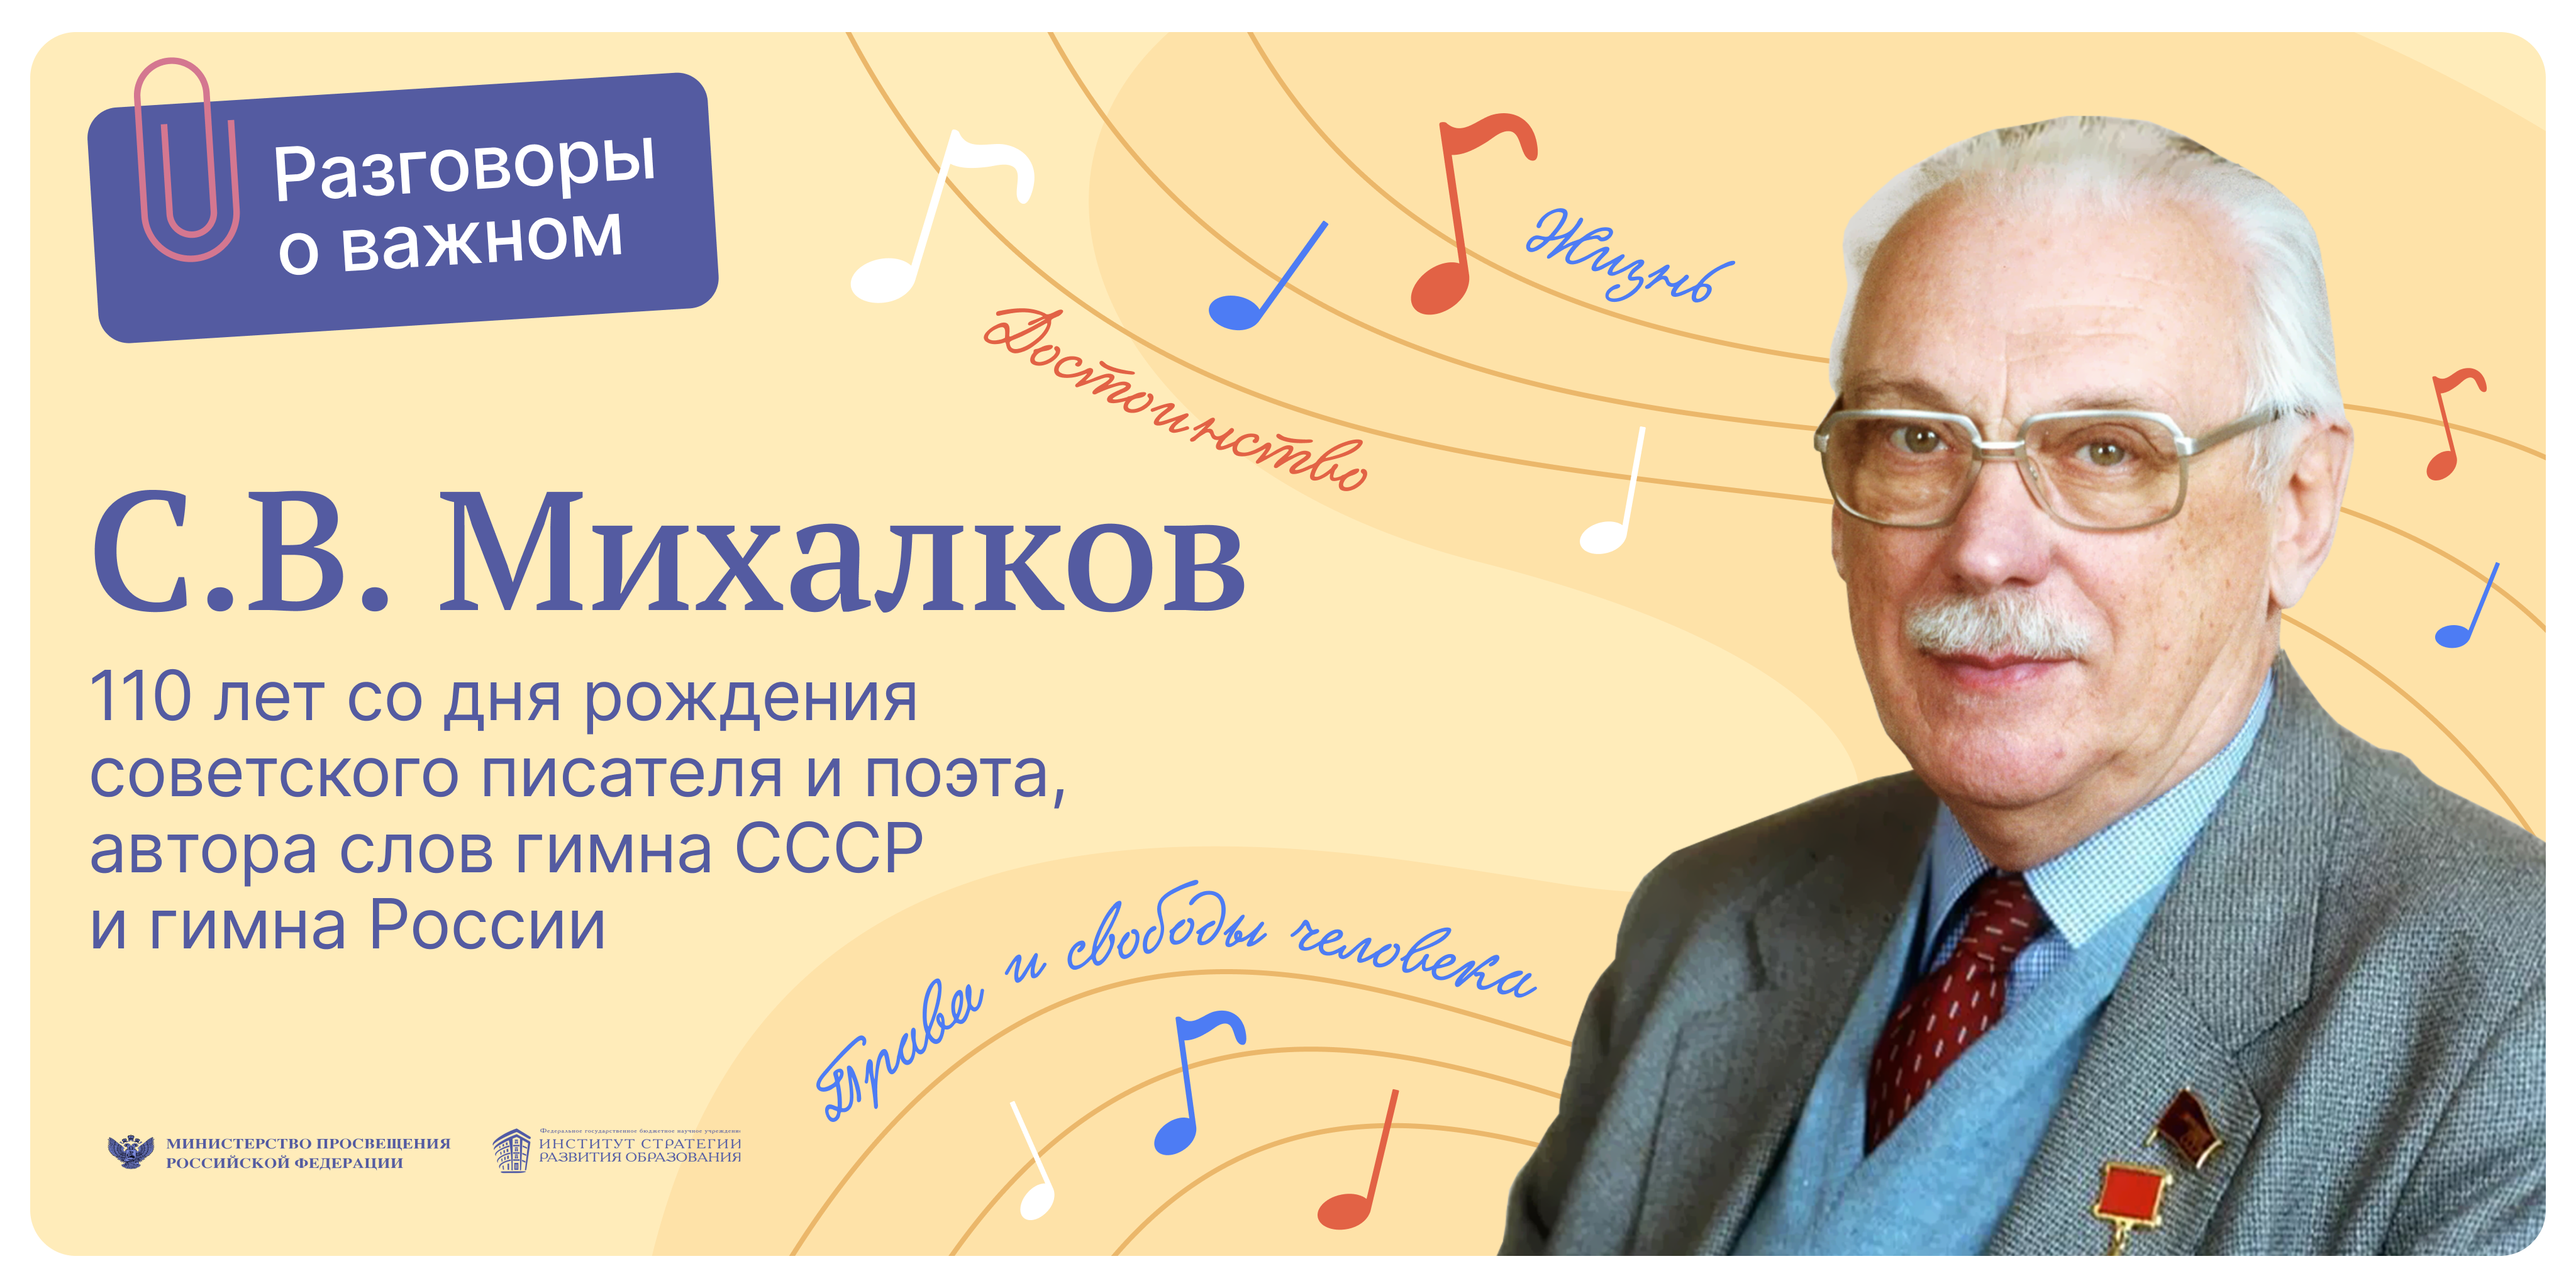 Разговоры о важном. 110 лет со дня рождения С.В. Михалкова.